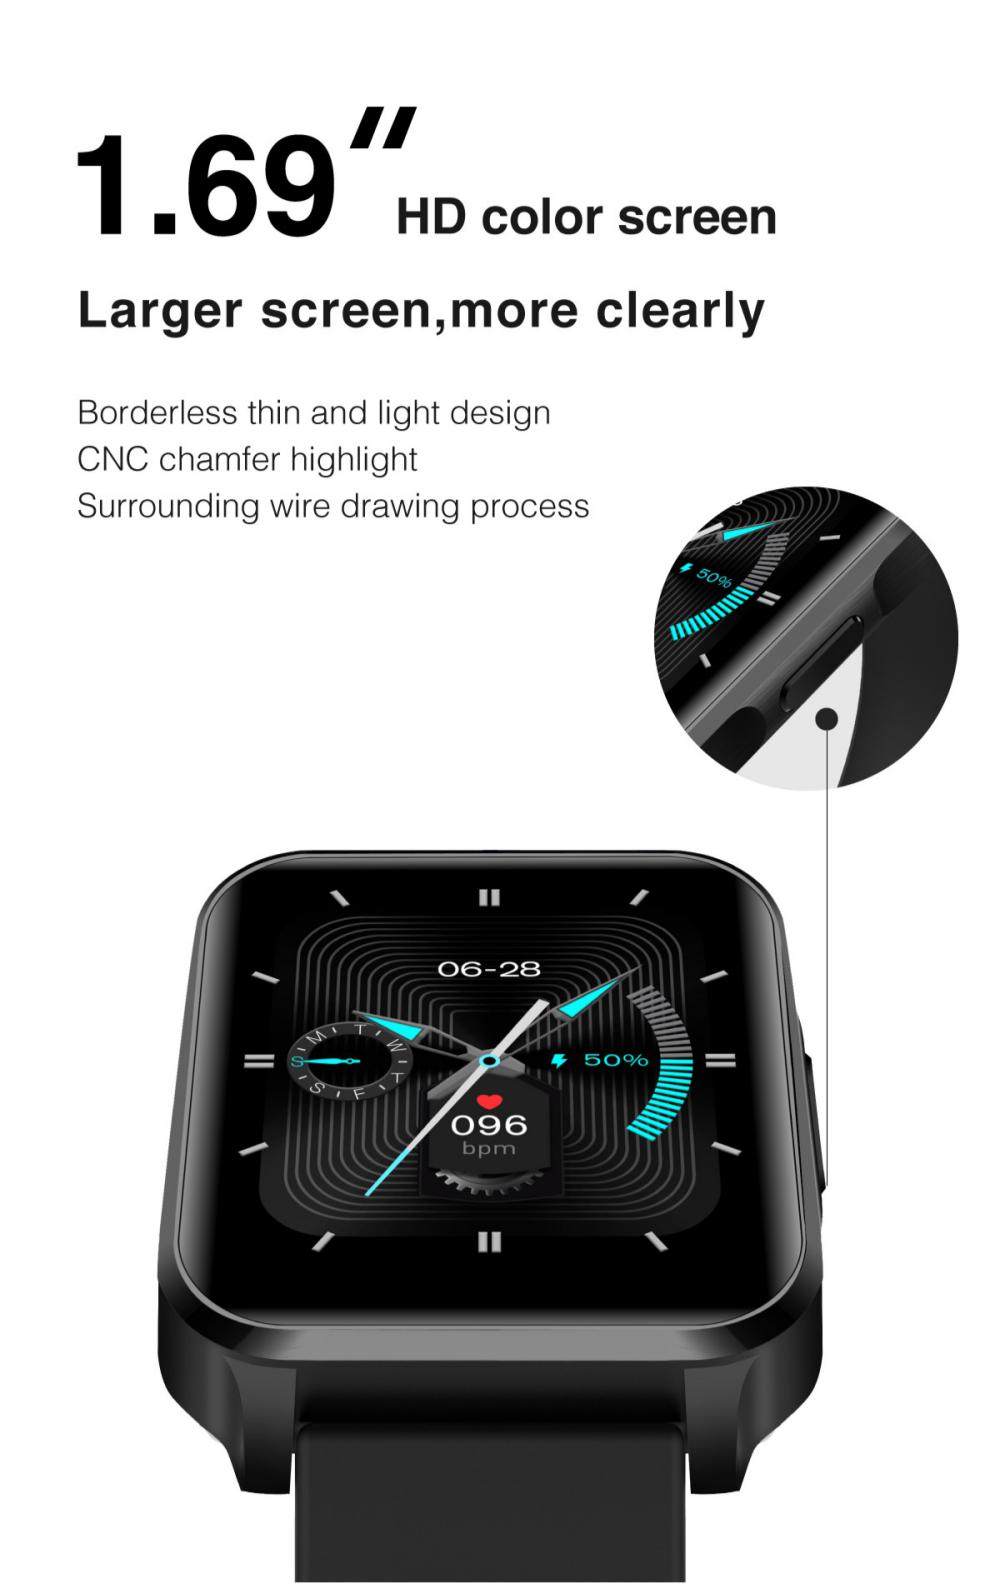 lenovo s2 pro smart watch ip67 waterproof ips full screen 3